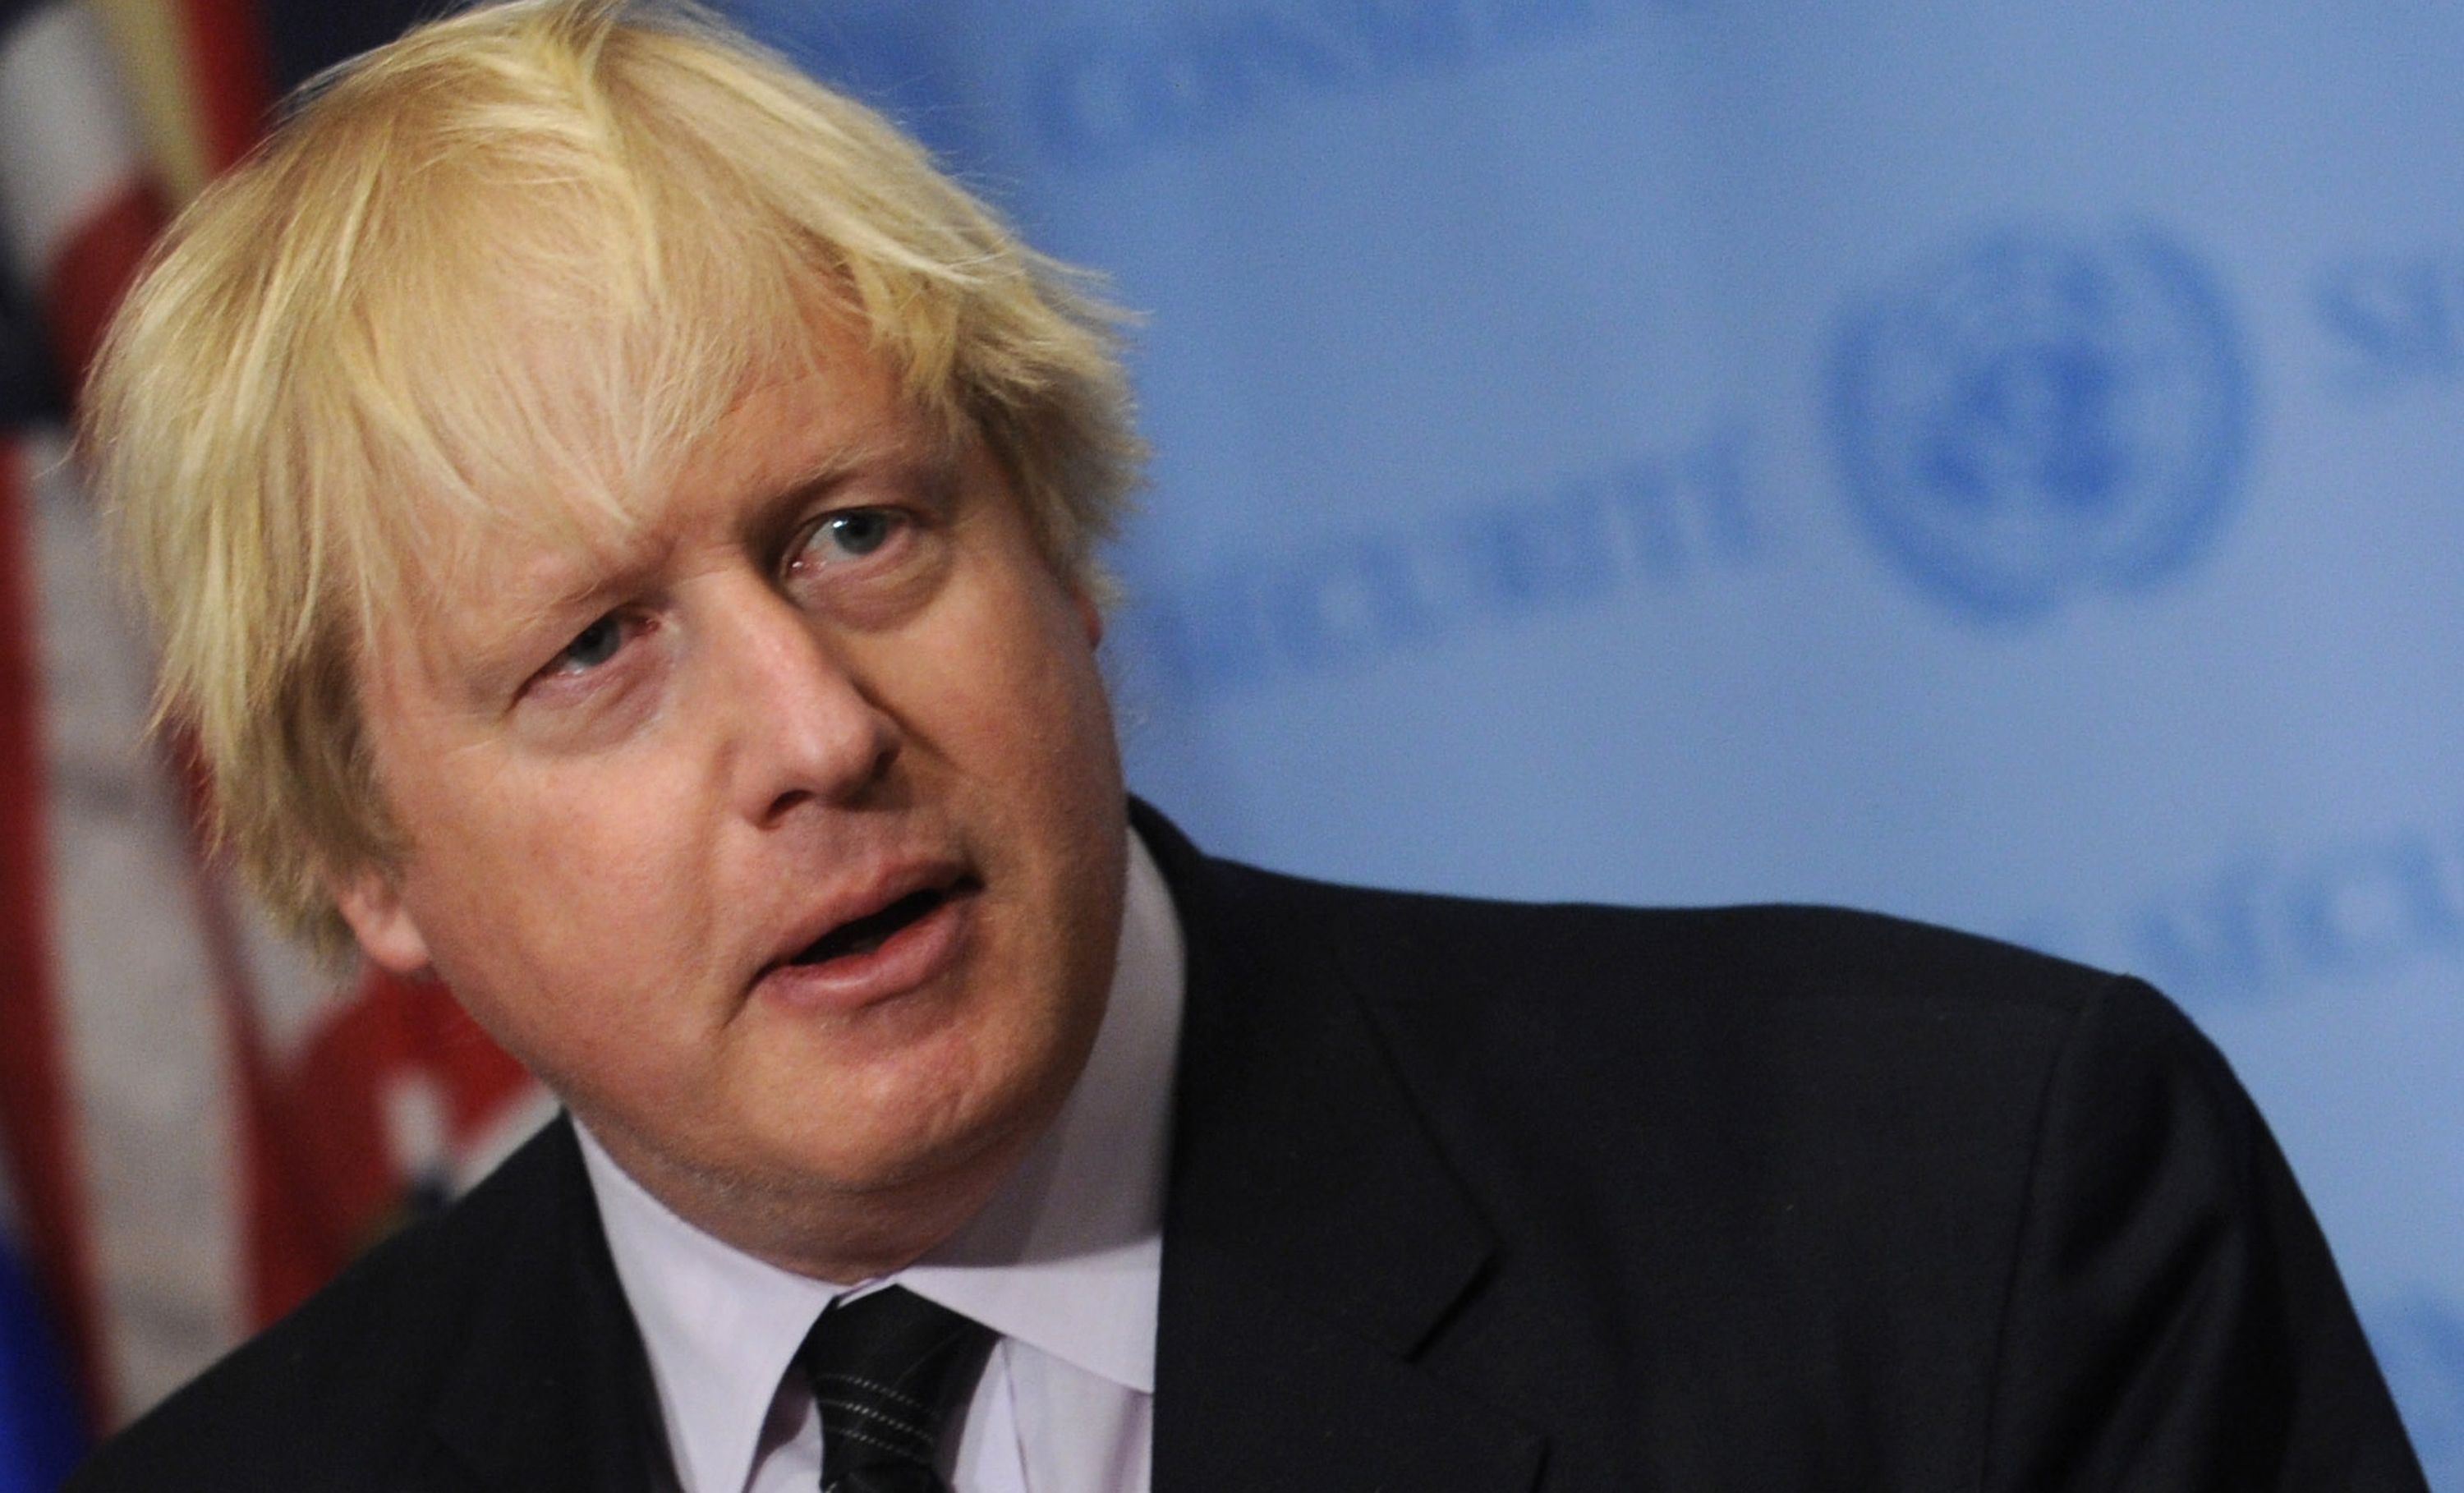 Ultimele declaraţii ale premierului Boris Johson: Marea Britanie este dispusă să ajute la deminare şi la exportul de cereale din Ucraina